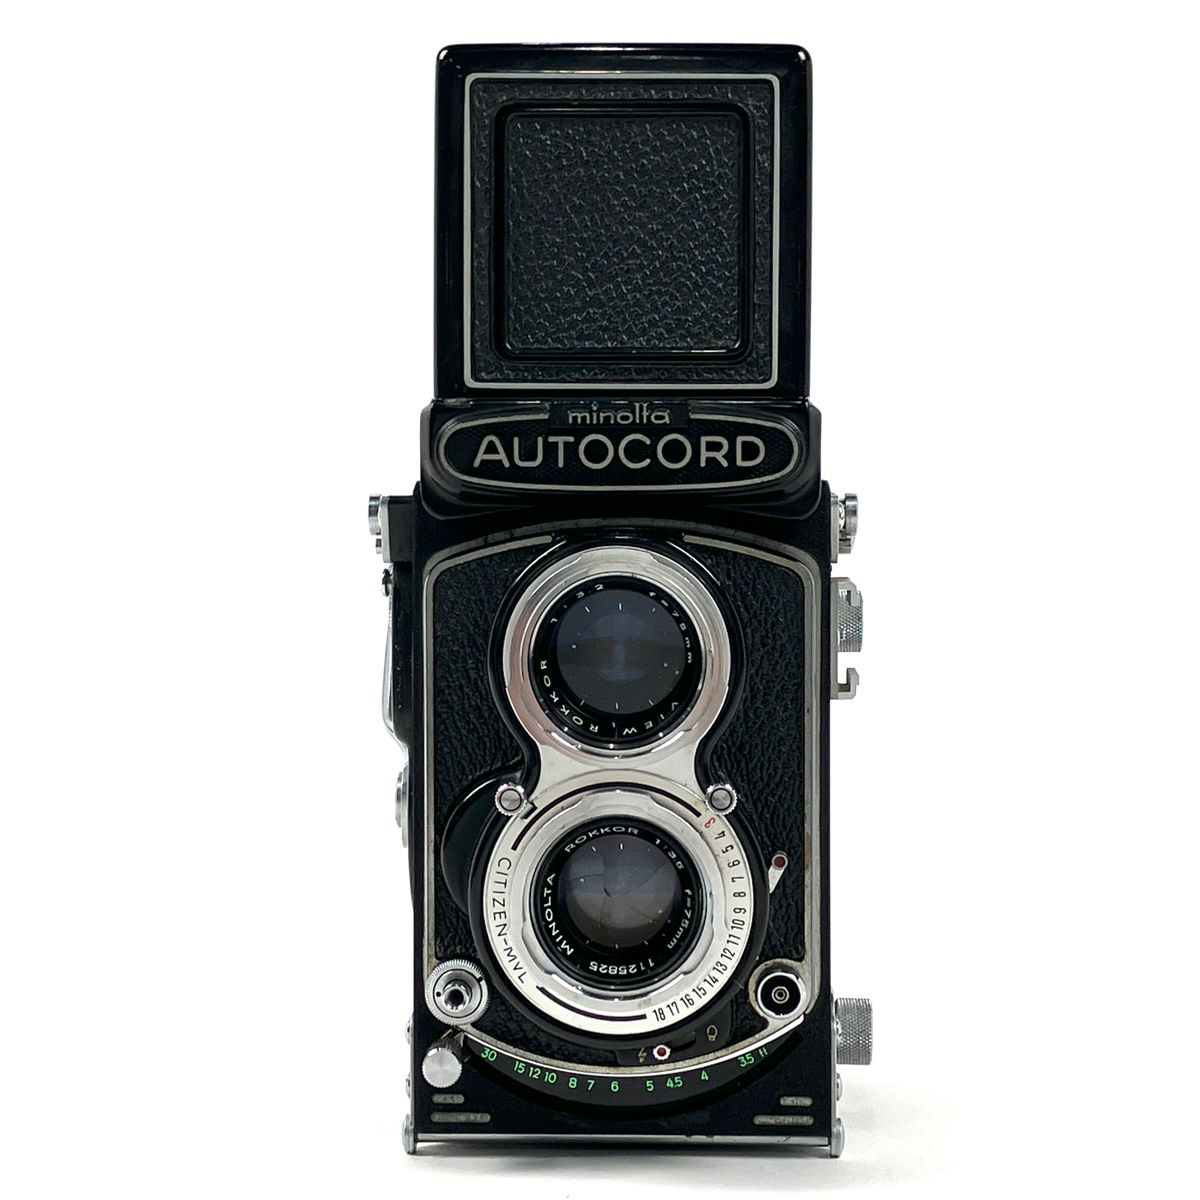 ミノルタ MINOLTA AUTOCORD III オートコード 後期型 ROKKOR 75mm F3.5 中判カメラ 【中古】